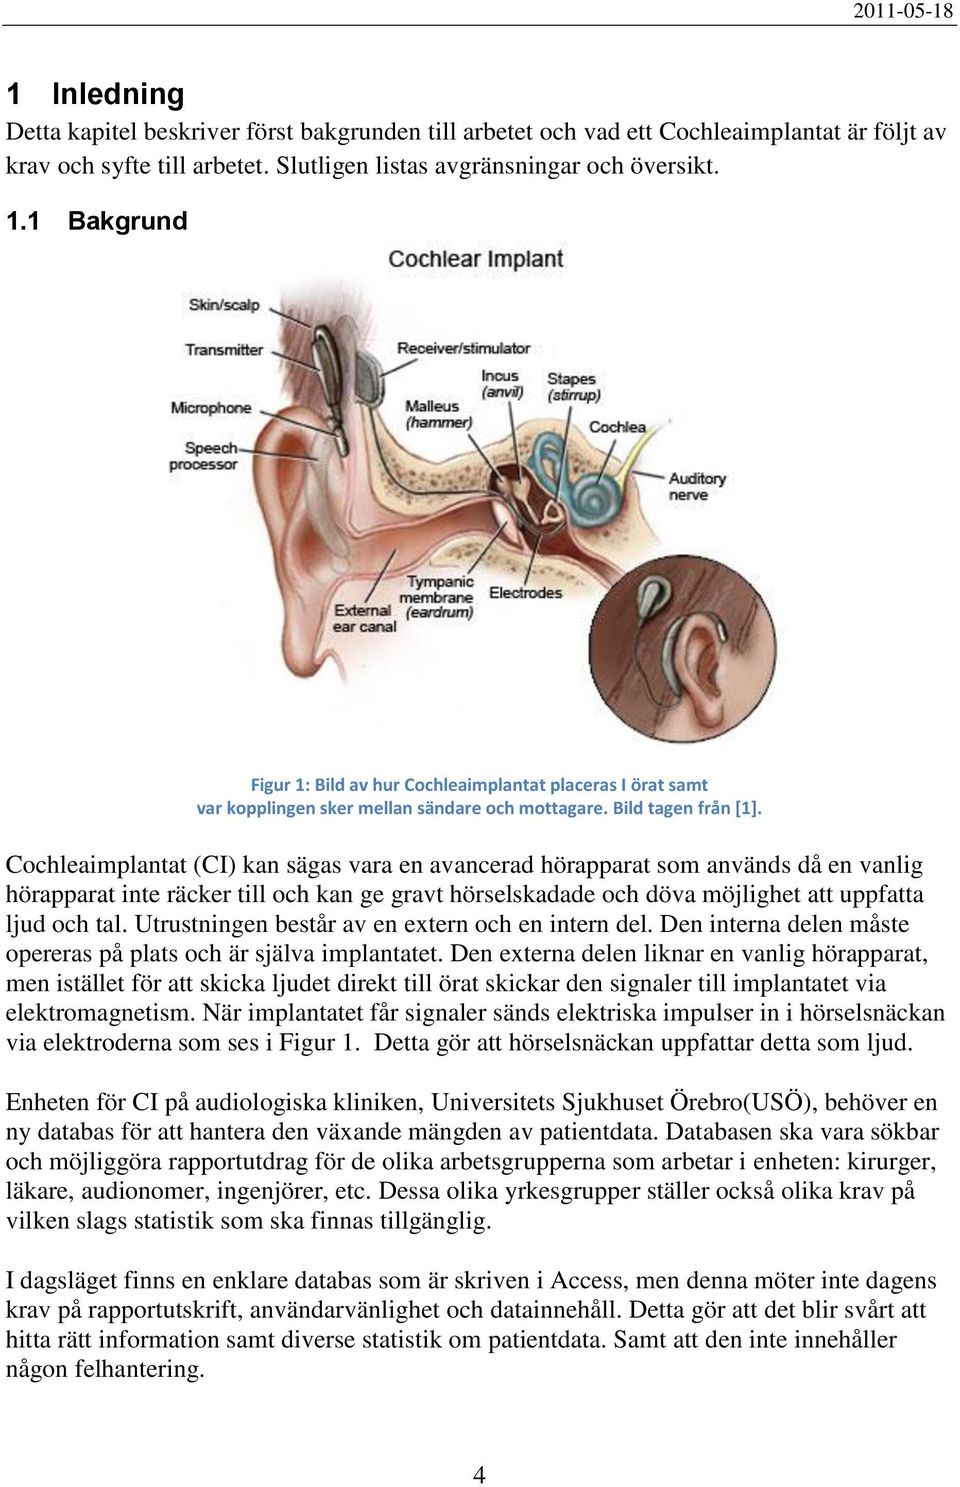 Cochleaimplantat (CI) kan sägas vara en avancerad hörapparat som används då en vanlig hörapparat inte räcker till och kan ge gravt hörselskadade och döva möjlighet att uppfatta ljud och tal.